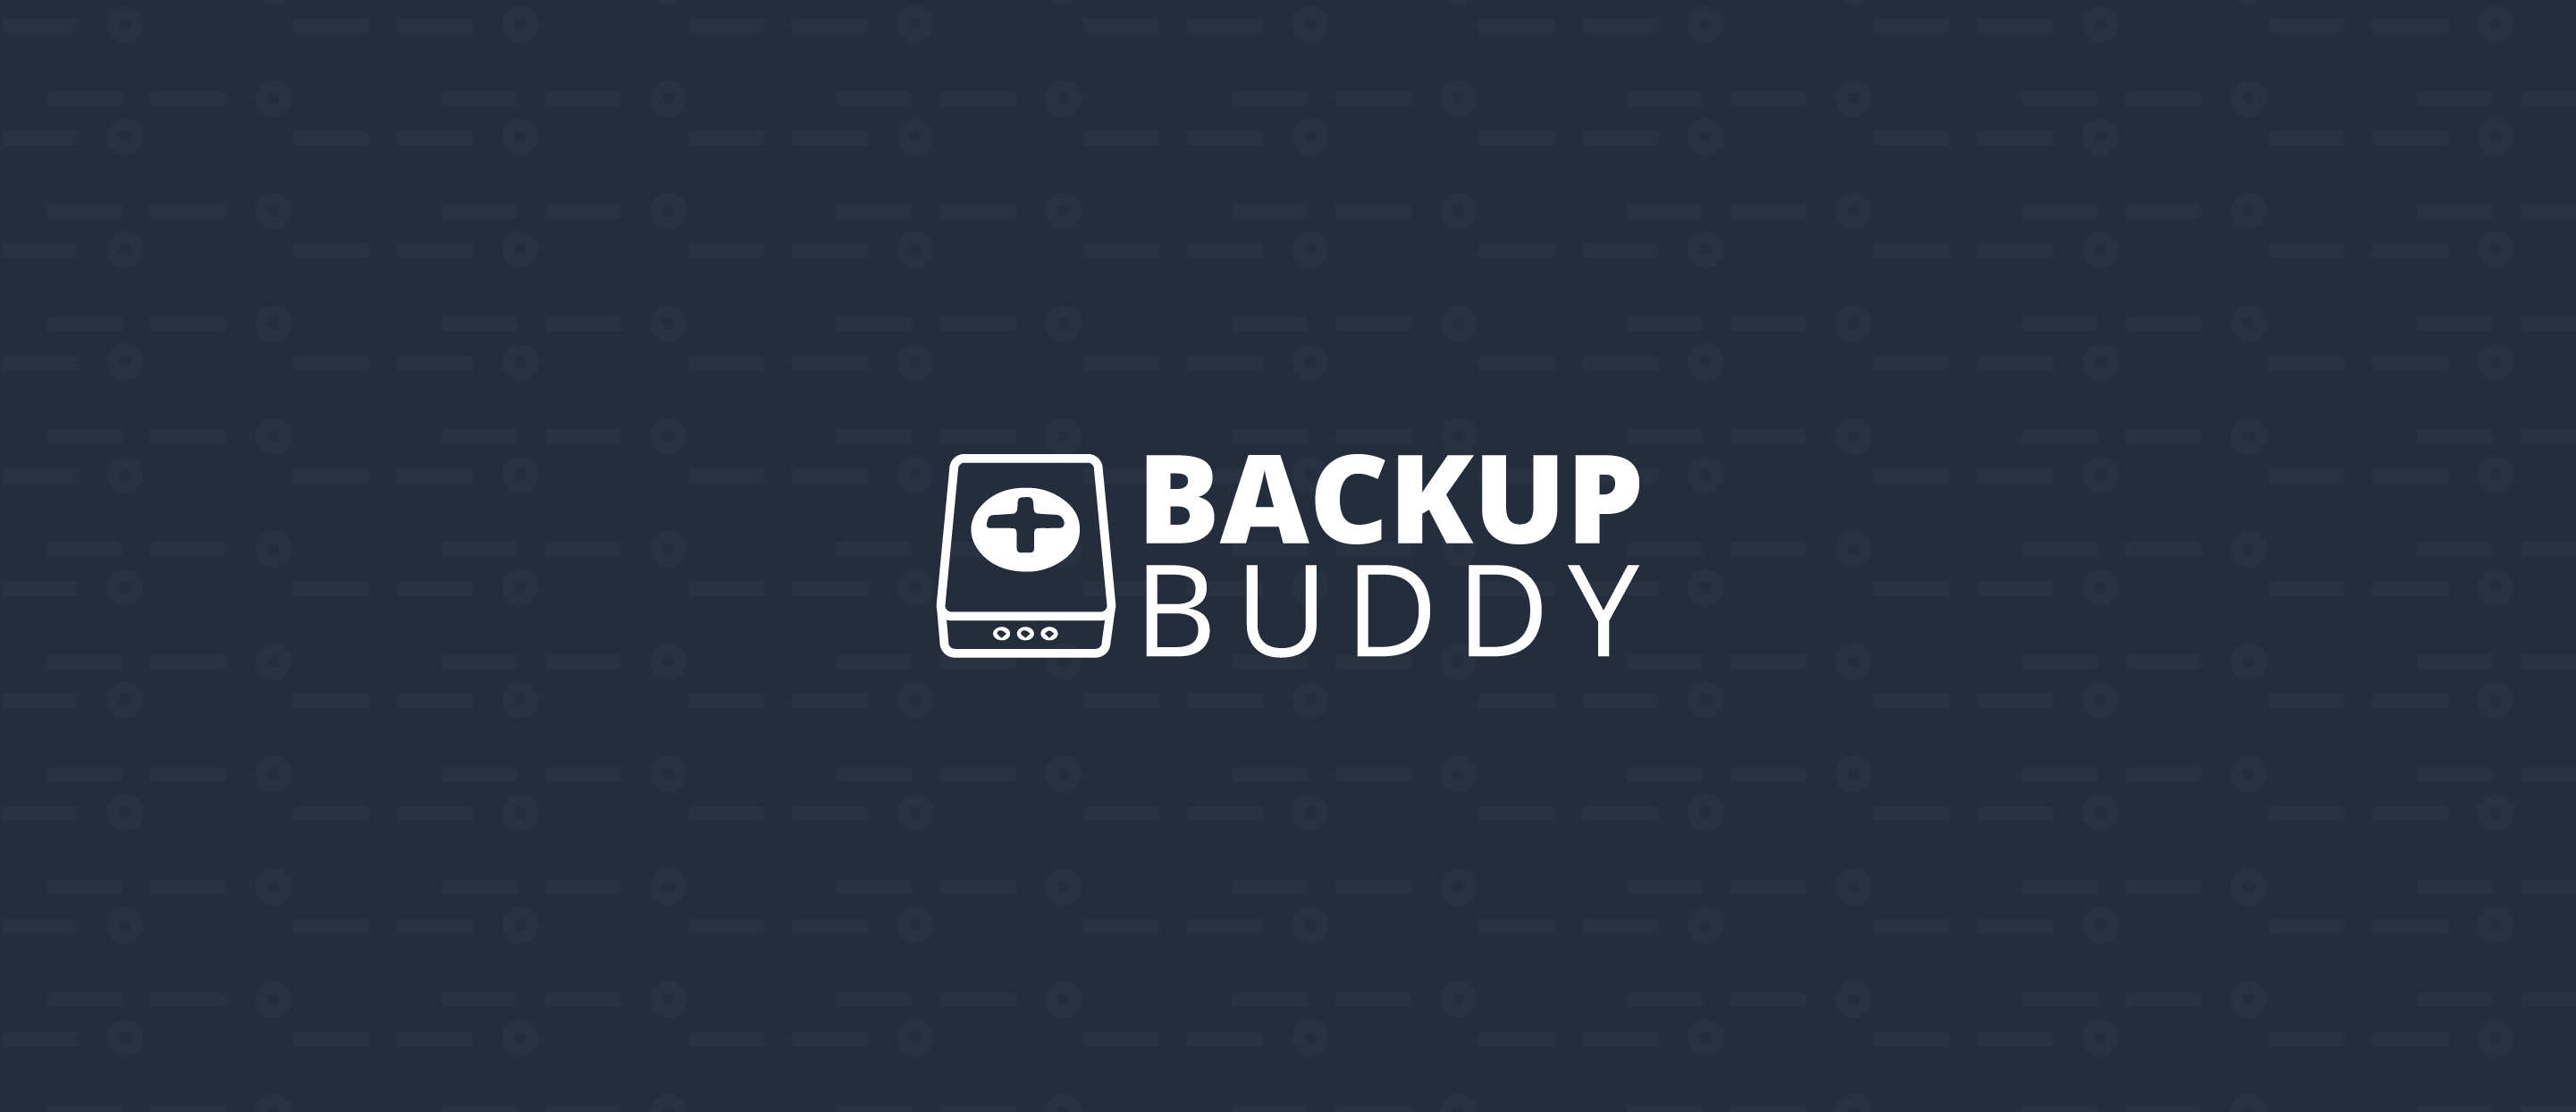 Product image for BackupBuddy.